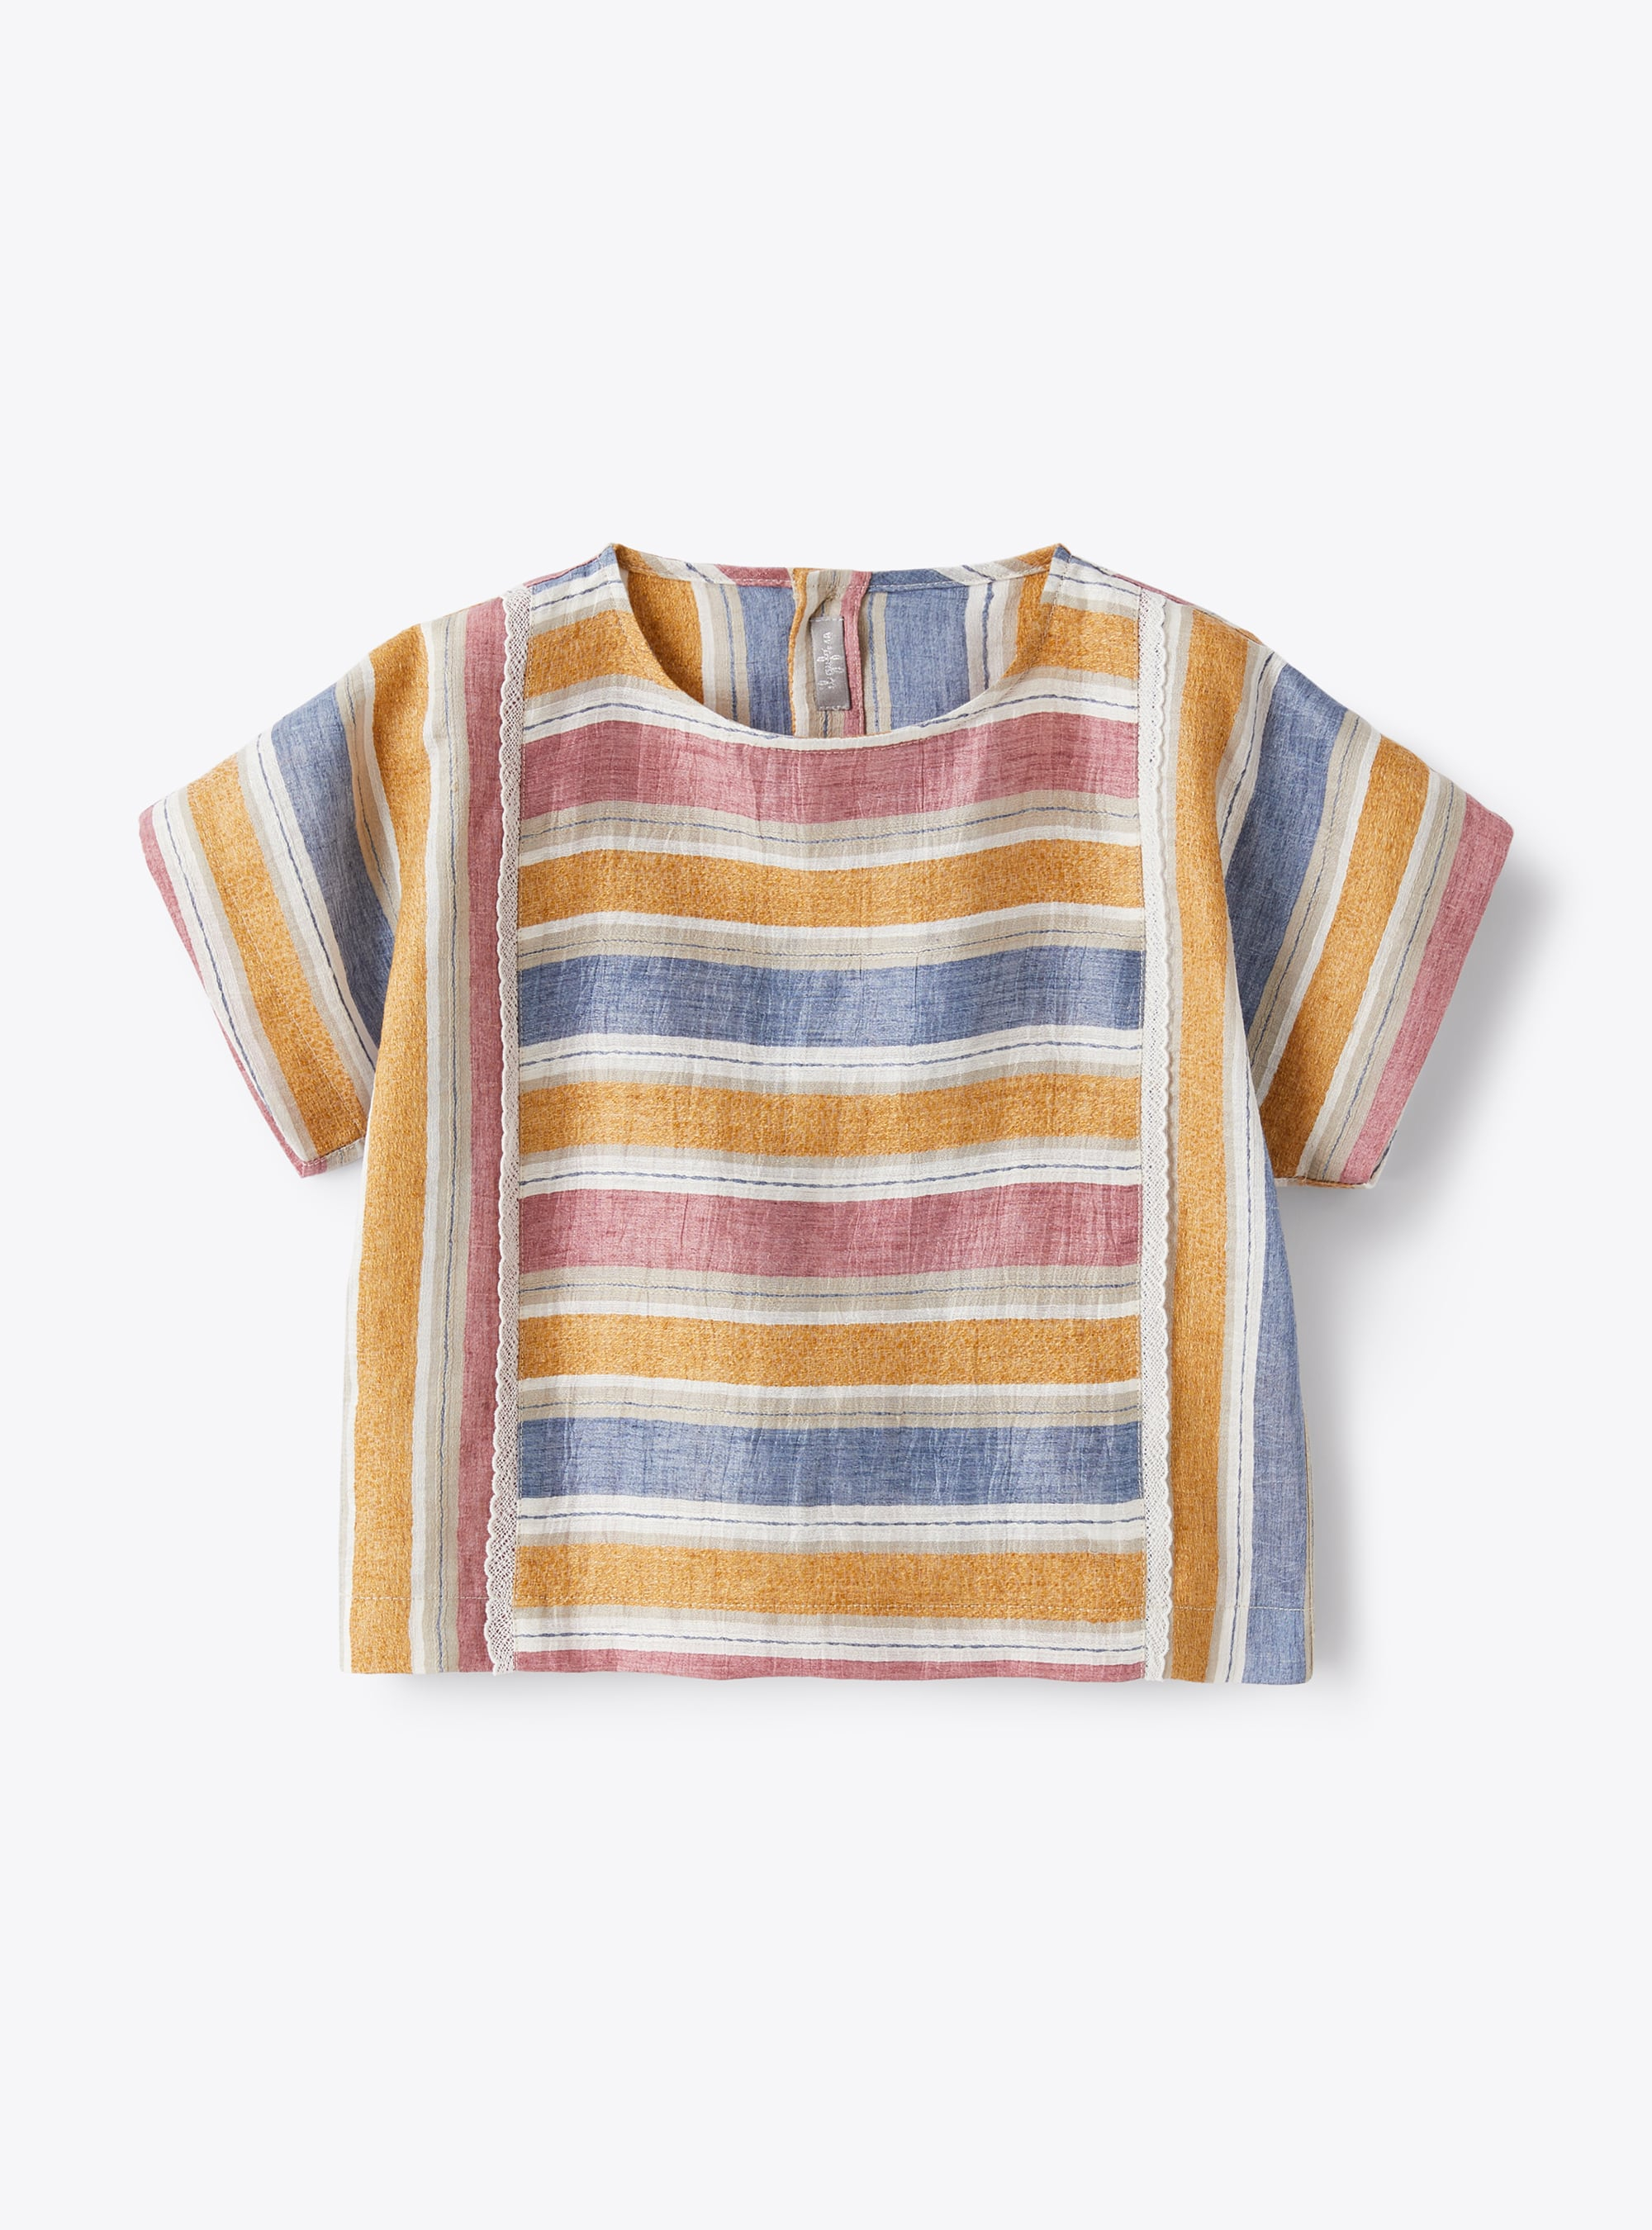 Kastiges Leinenhemd mit bunten Streifen - Hemden - Il Gufo